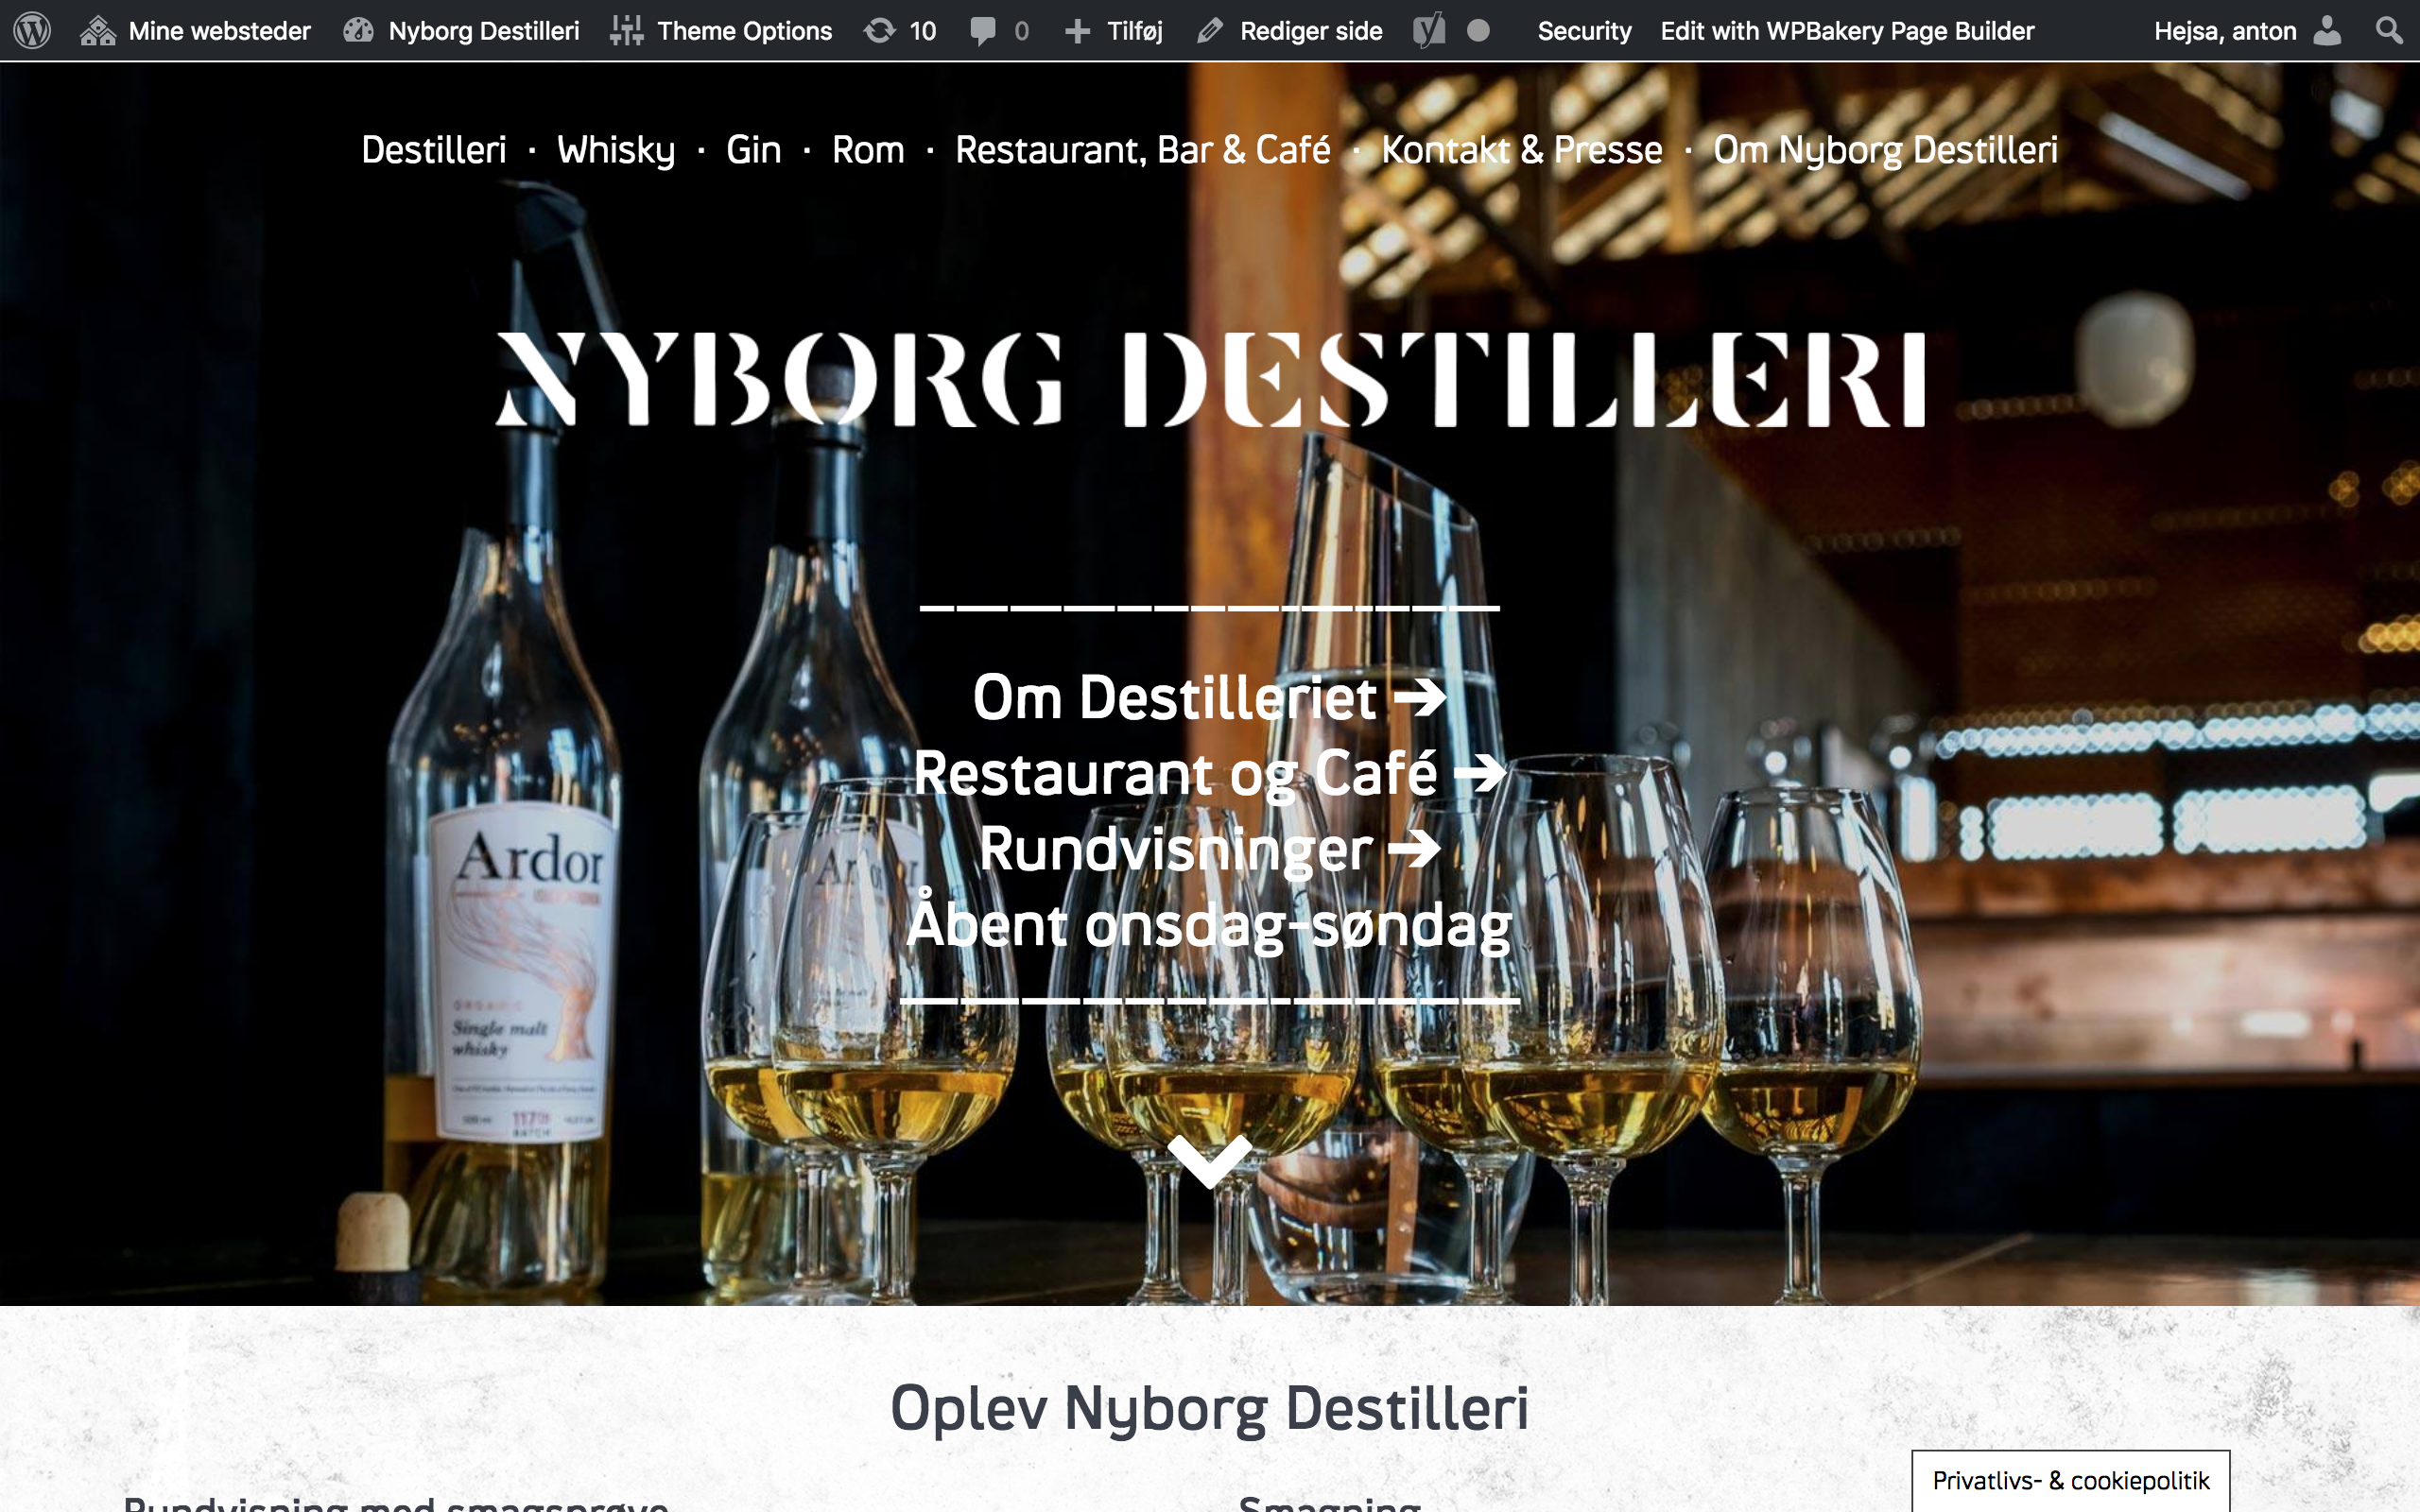 1 Optimeirng af landingpage på www.nyborgdestilleri.com via lidt HTML og CSS3 (designprincipper)